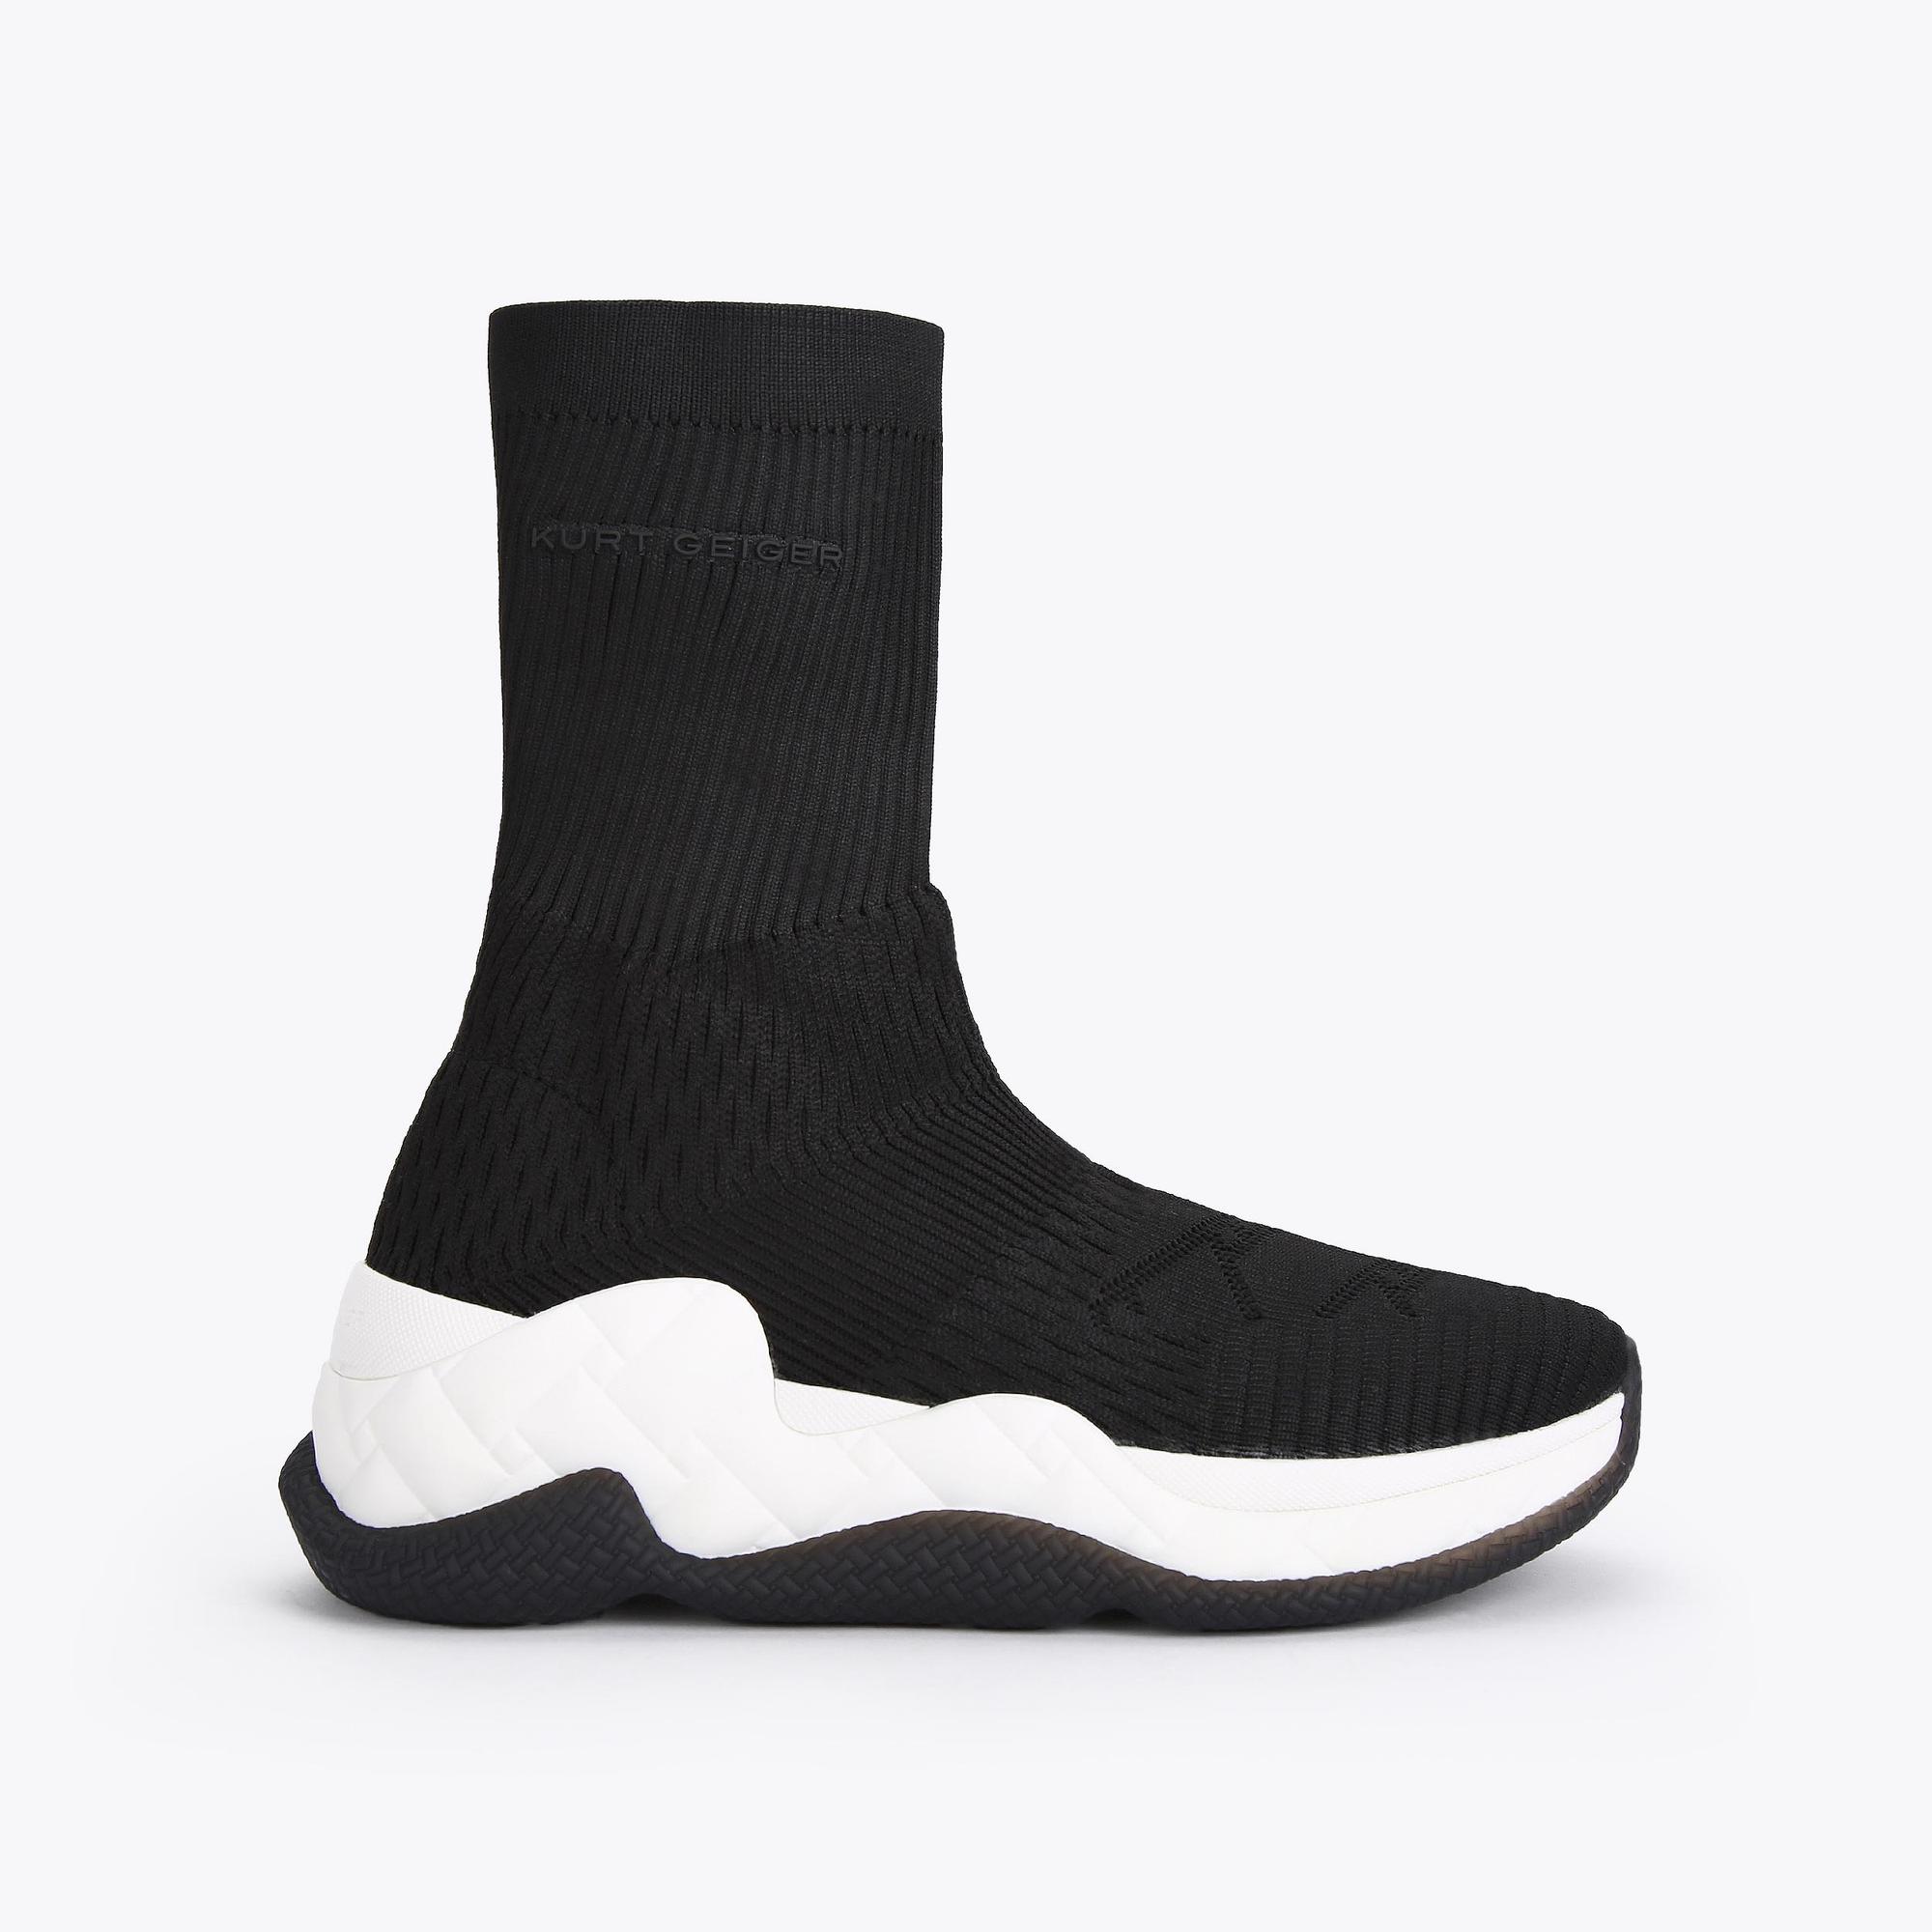 Kurt Geiger Rubber London Knit Sock-like Sneakers in Black Womens Clothing Hosiery Socks 